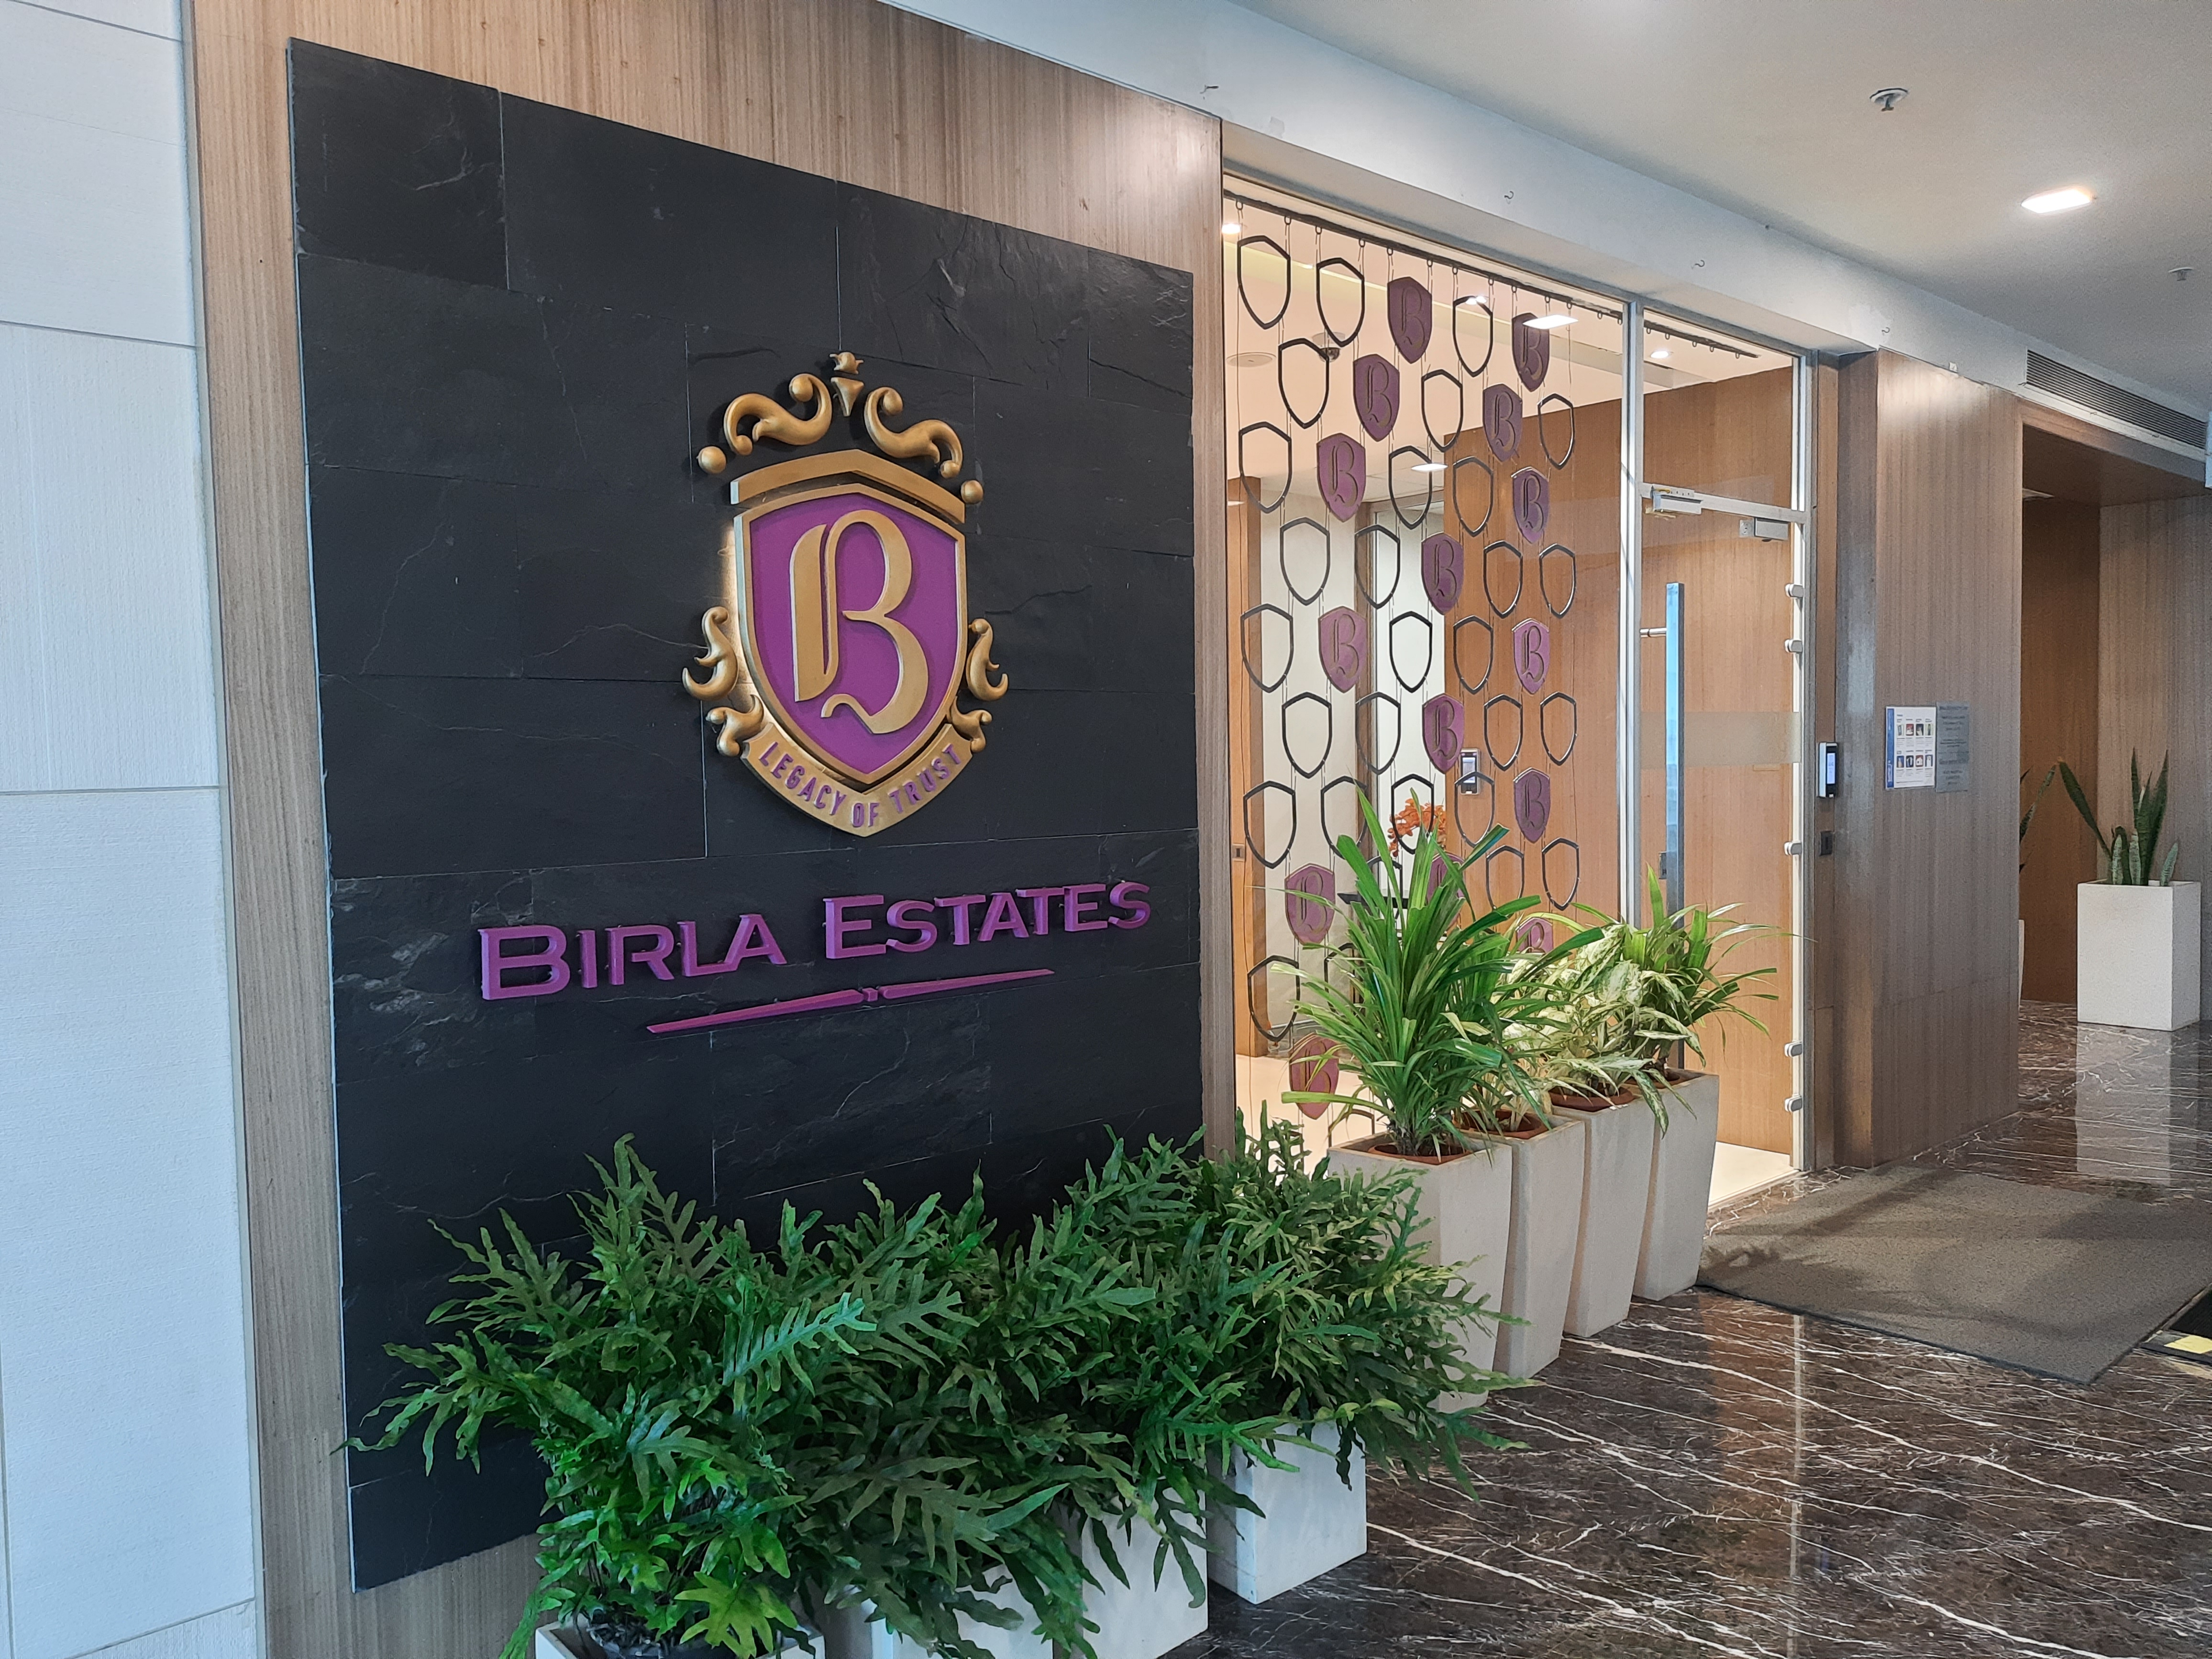 Birla Estates Acquires 10 Acre Land In Bengaluru